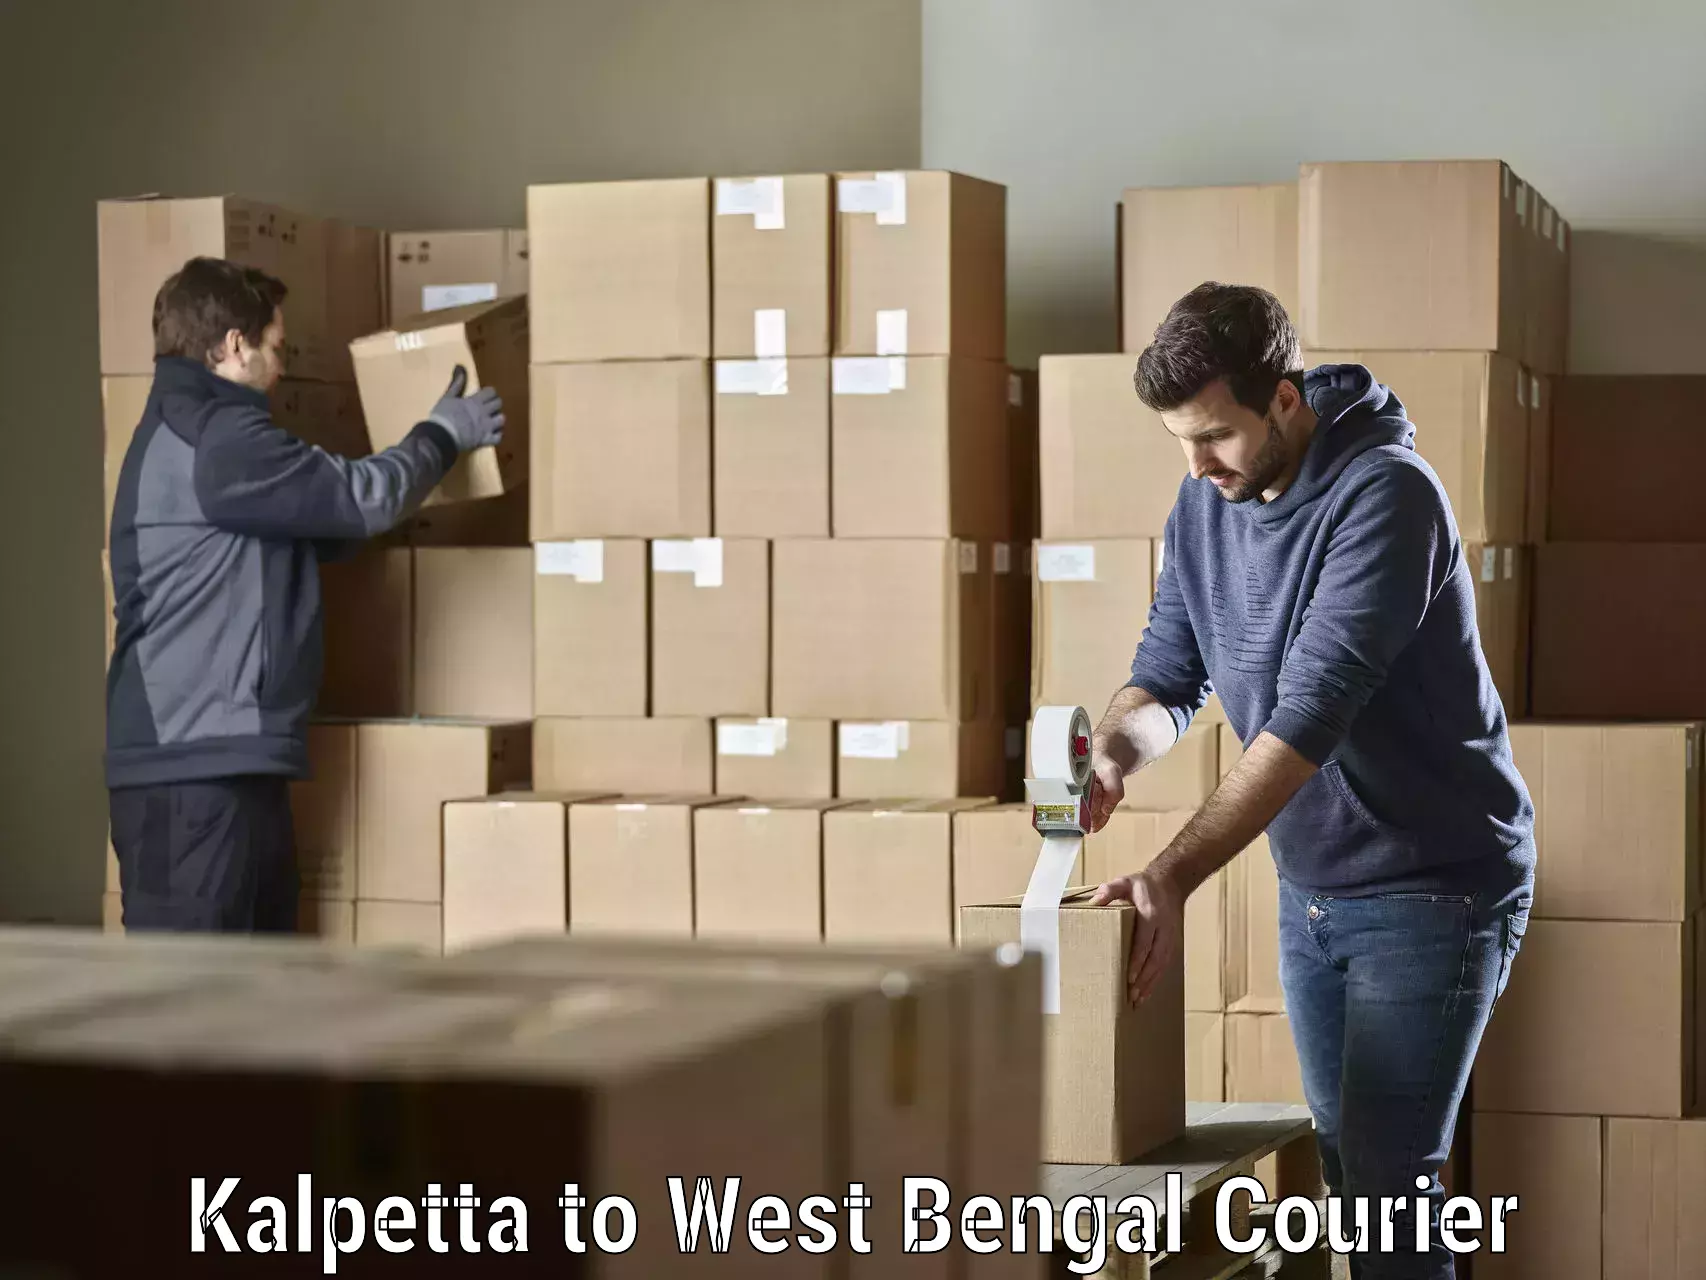 Global logistics network Kalpetta to Maheshtala